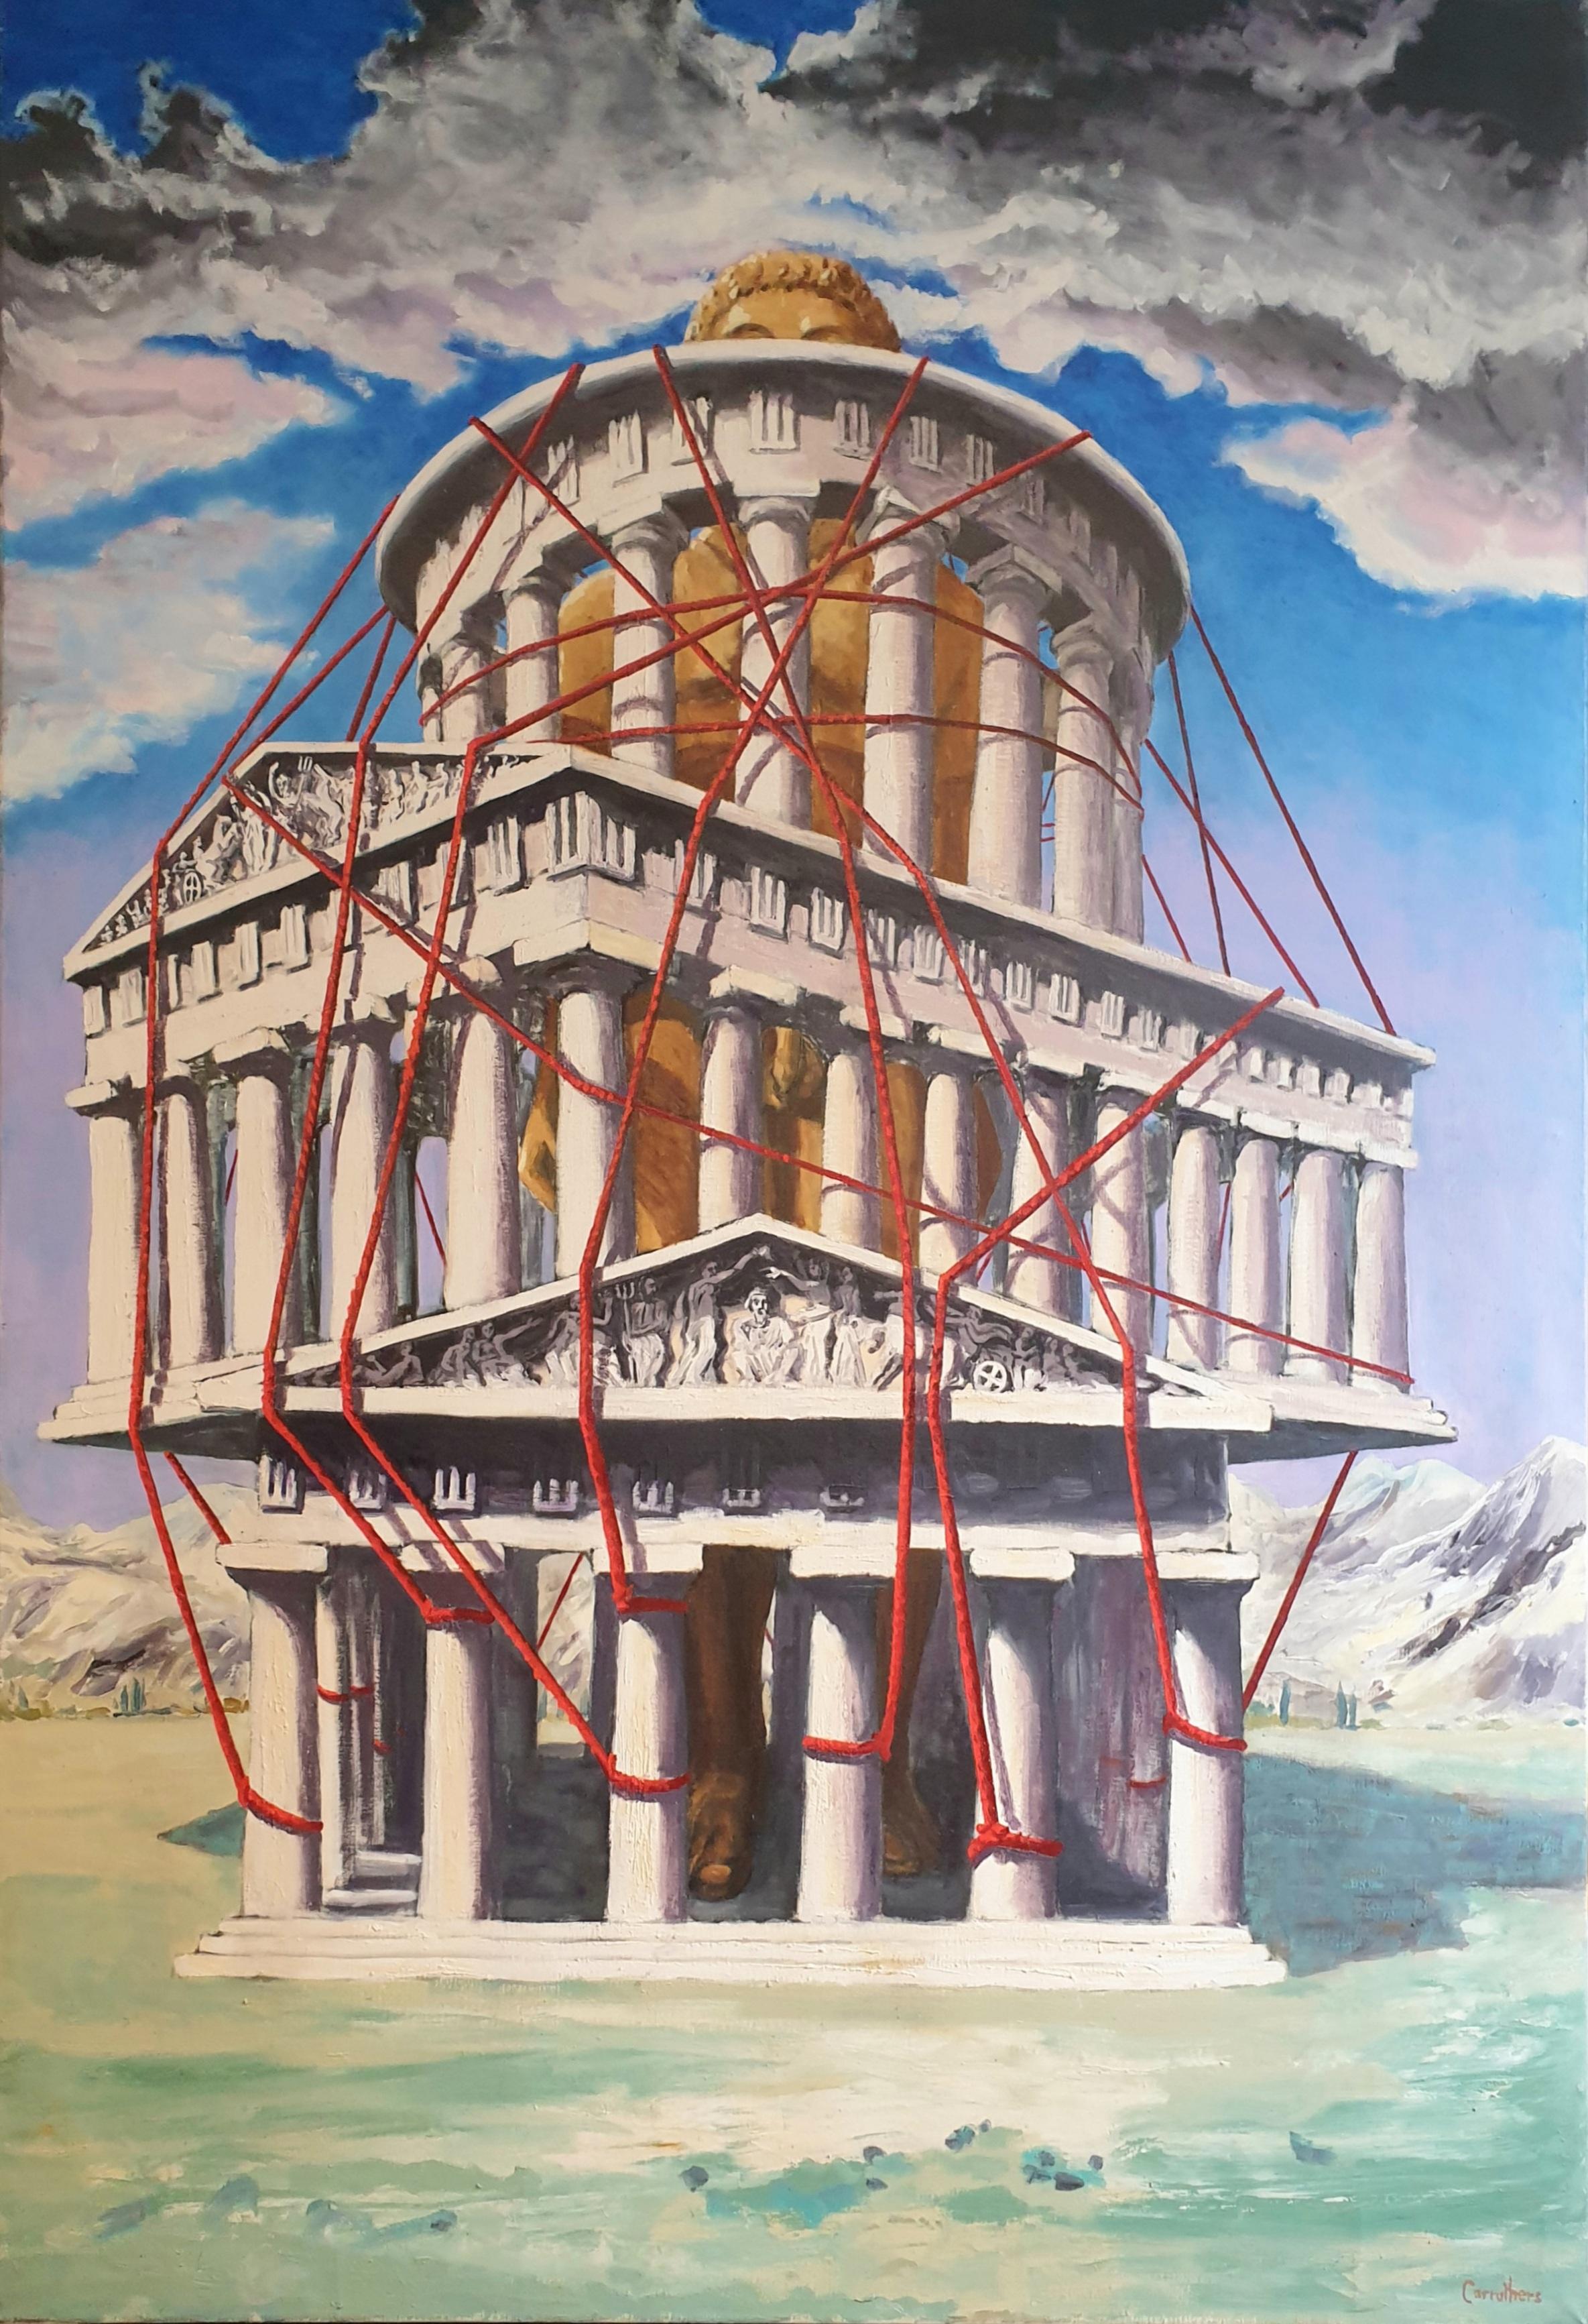 Figurative Painting Derek Carruthers  - Très grande huile sur toile surréaliste de la fin du 20e siècle, « Le temple ». 